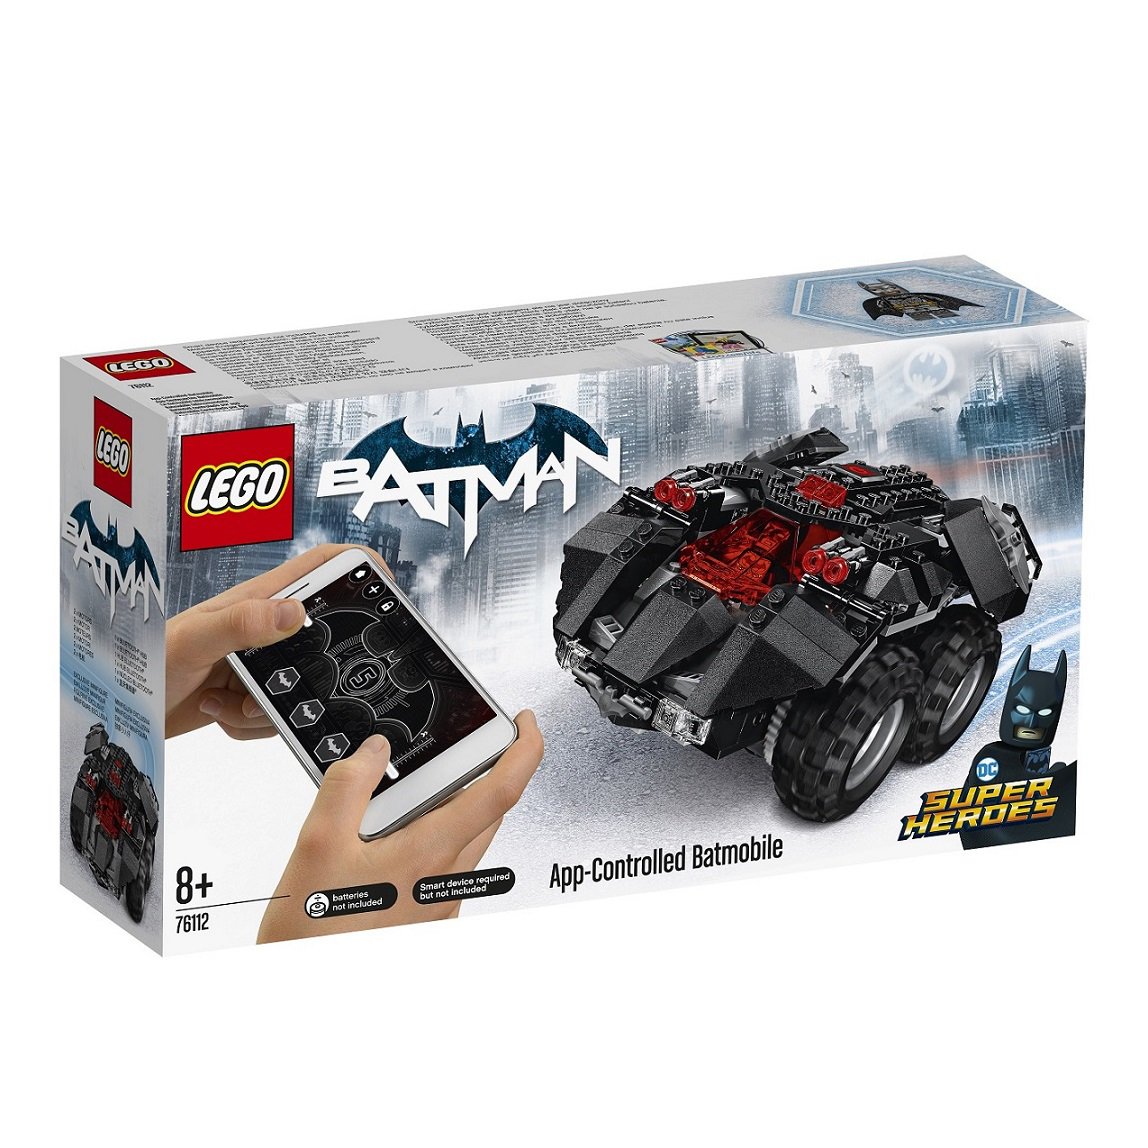 Batmobile telecomandata - set LEGO